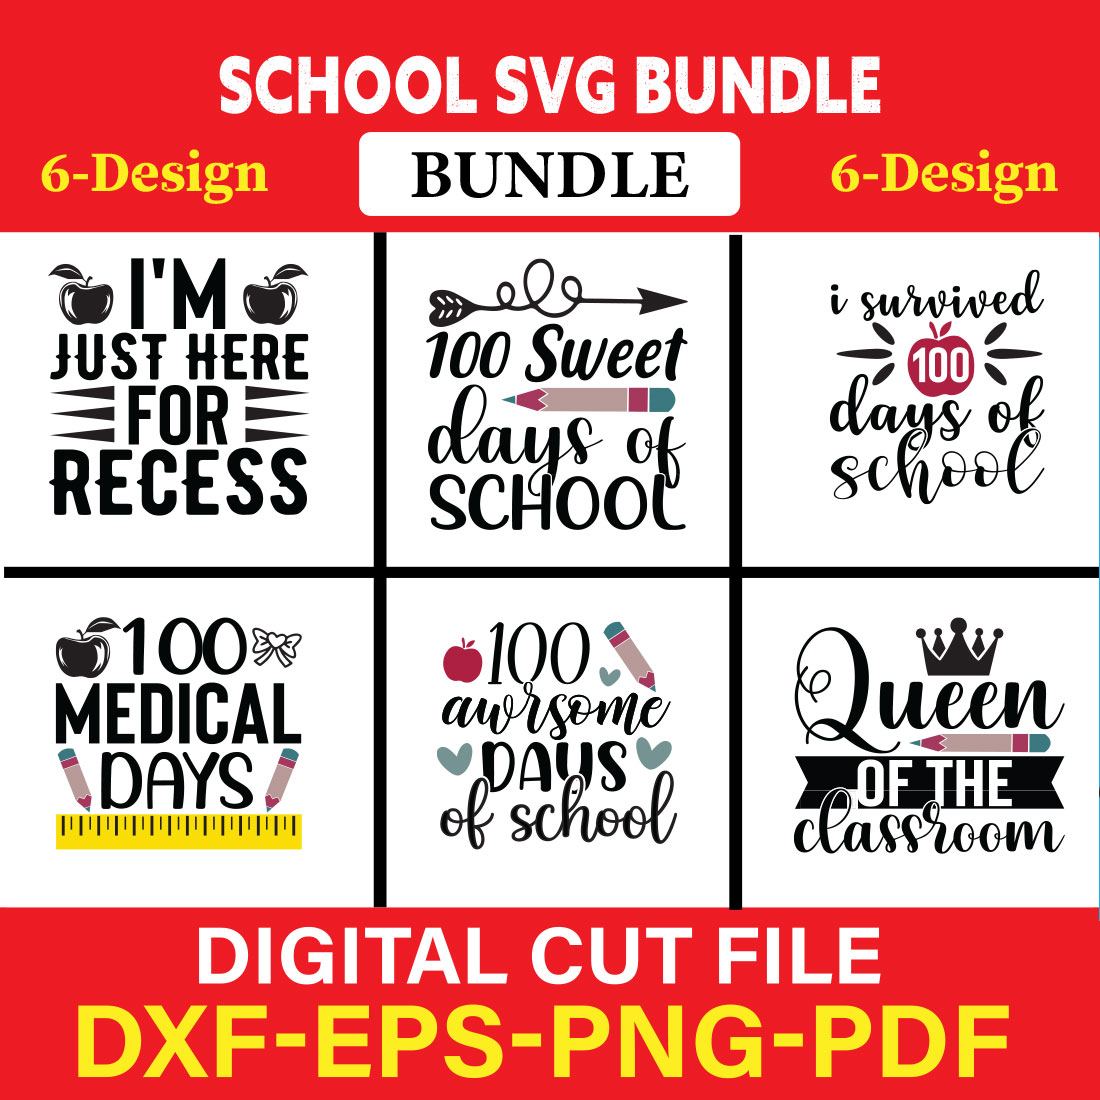 School svg bundle T-shirt Design Bundle Vol-7 cover image.